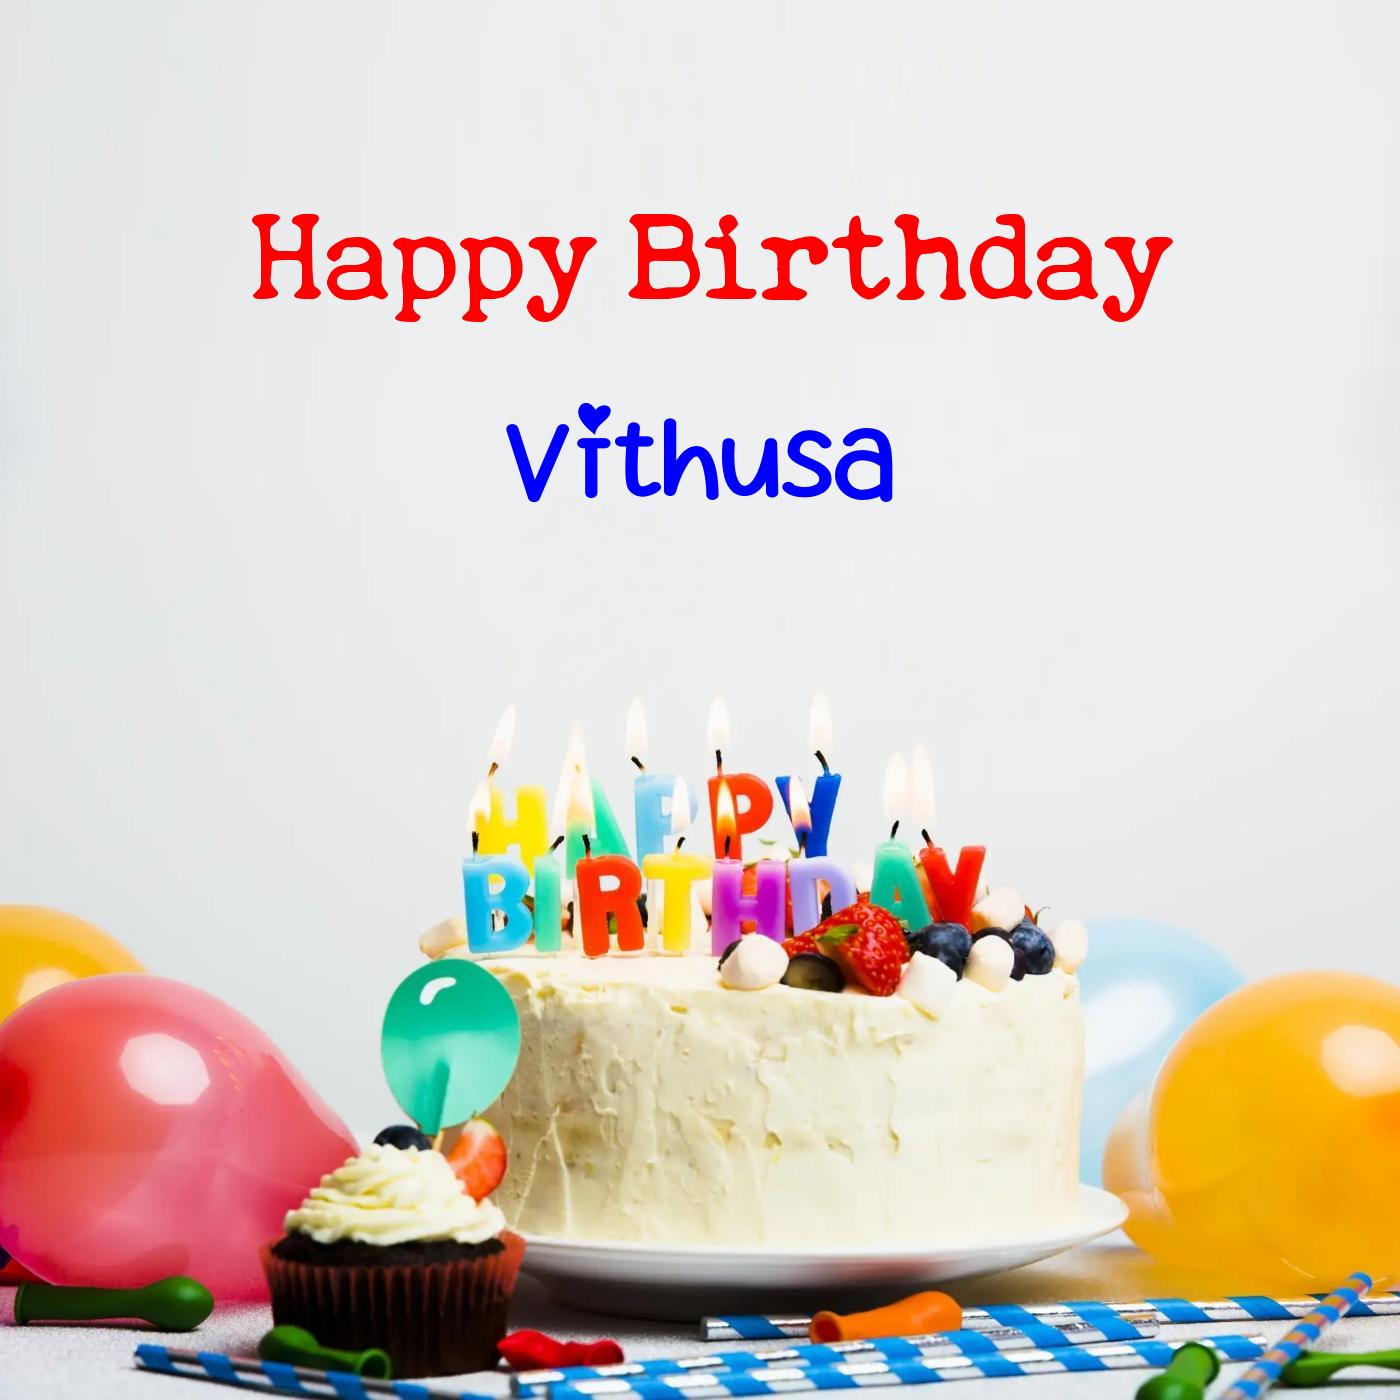 Happy Birthday Vithusa Cake Balloons Card